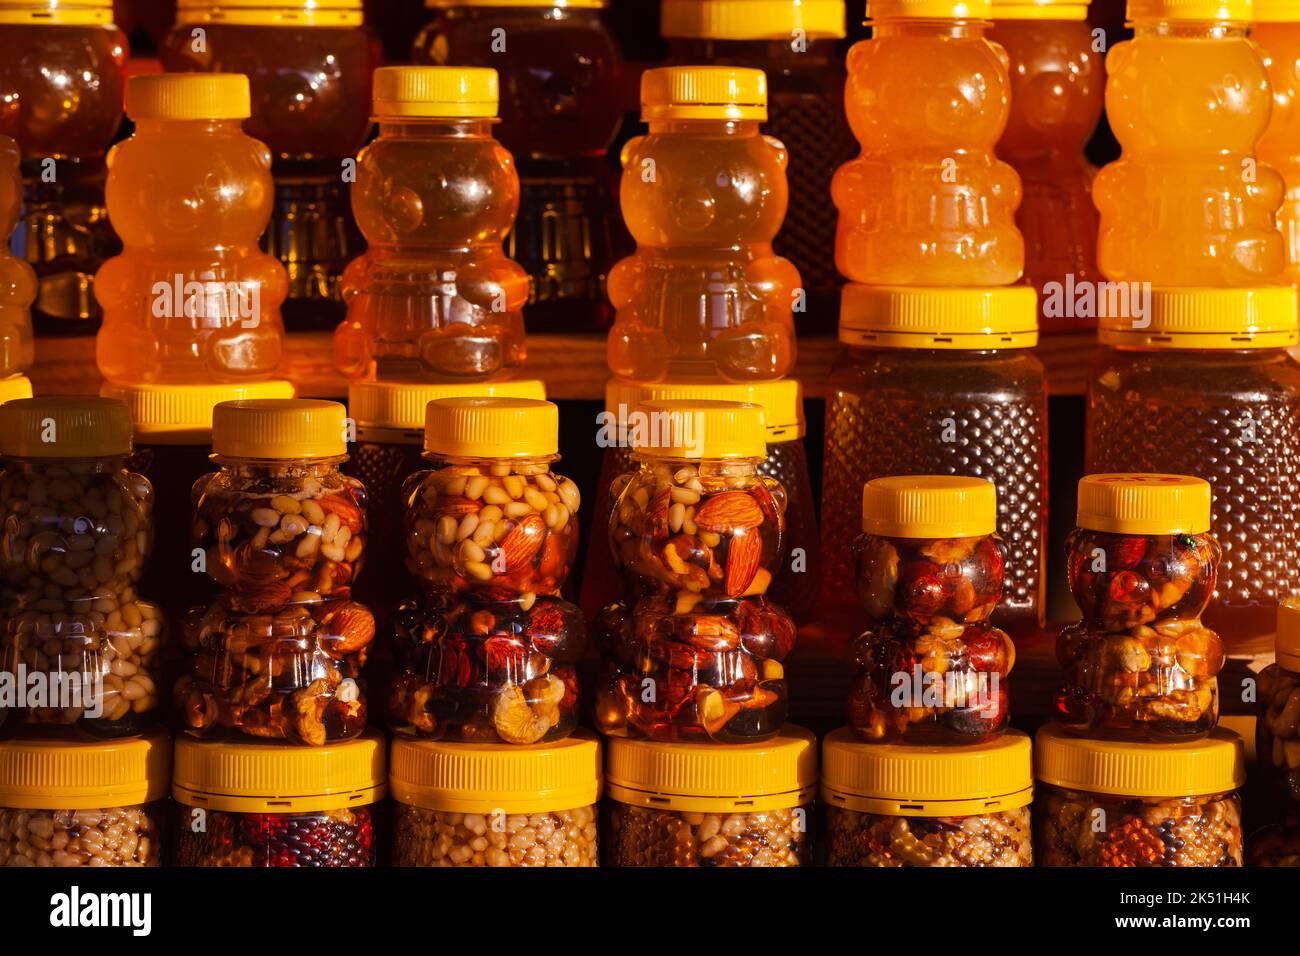 Assortiment de miel avec noix dans des pots en plastique en forme d'ours se tiennent sur une fenêtre d'atelier dans une rangée. Gros plan avec mise au point douce sélective Banque D'Images